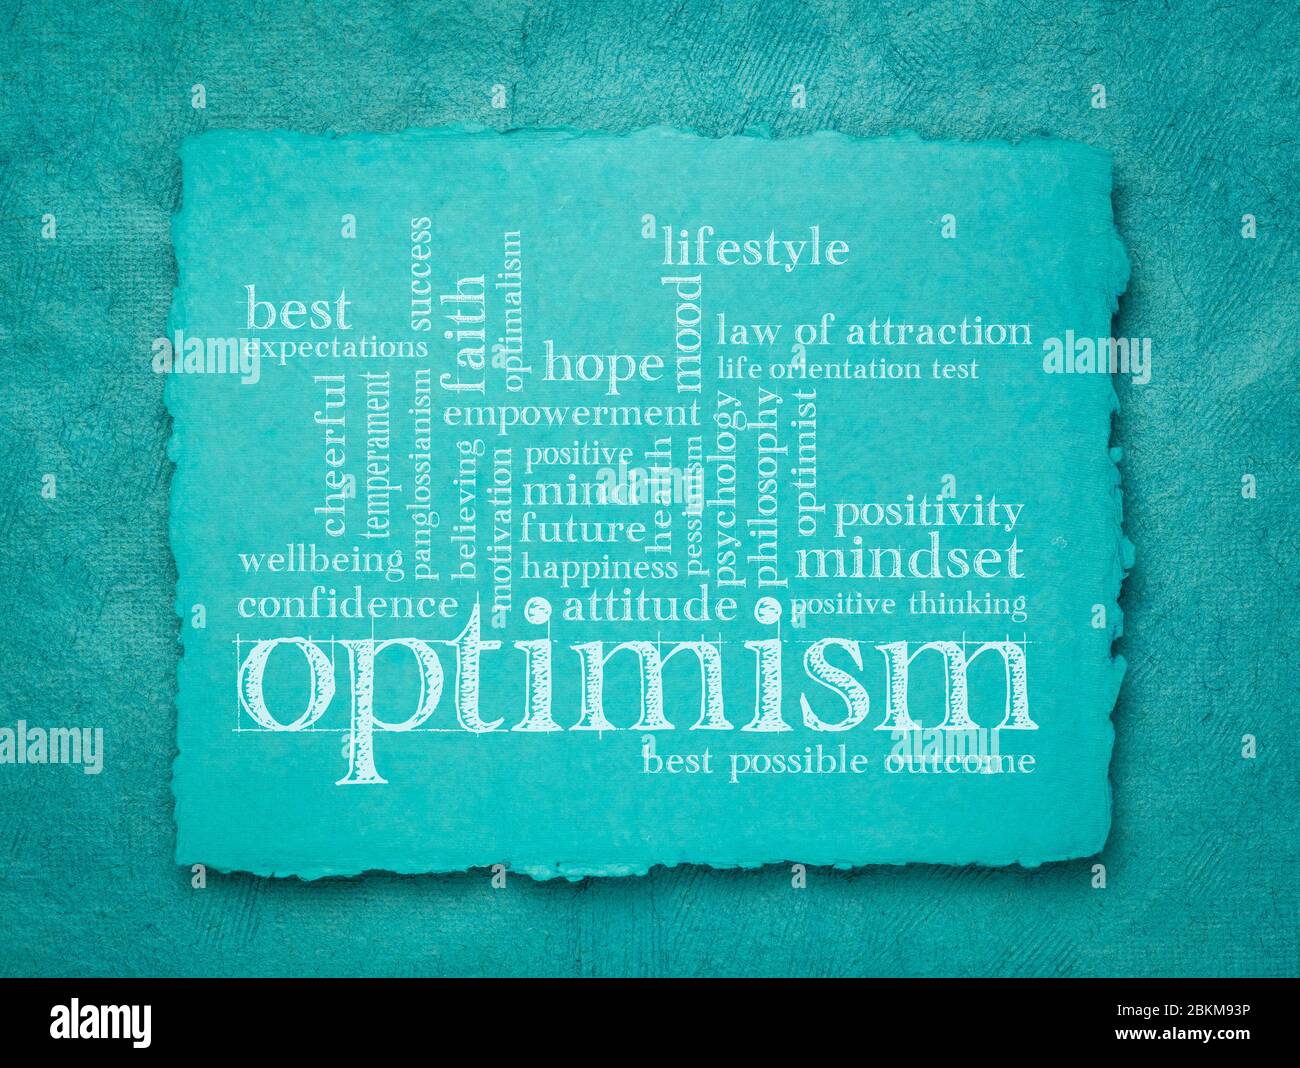 Optimismus Wort Wolke - Handschrift auf einem blauen handgefertigten Papier, Lifestyle, Hoffnung und Positivität Konzept Stockfoto